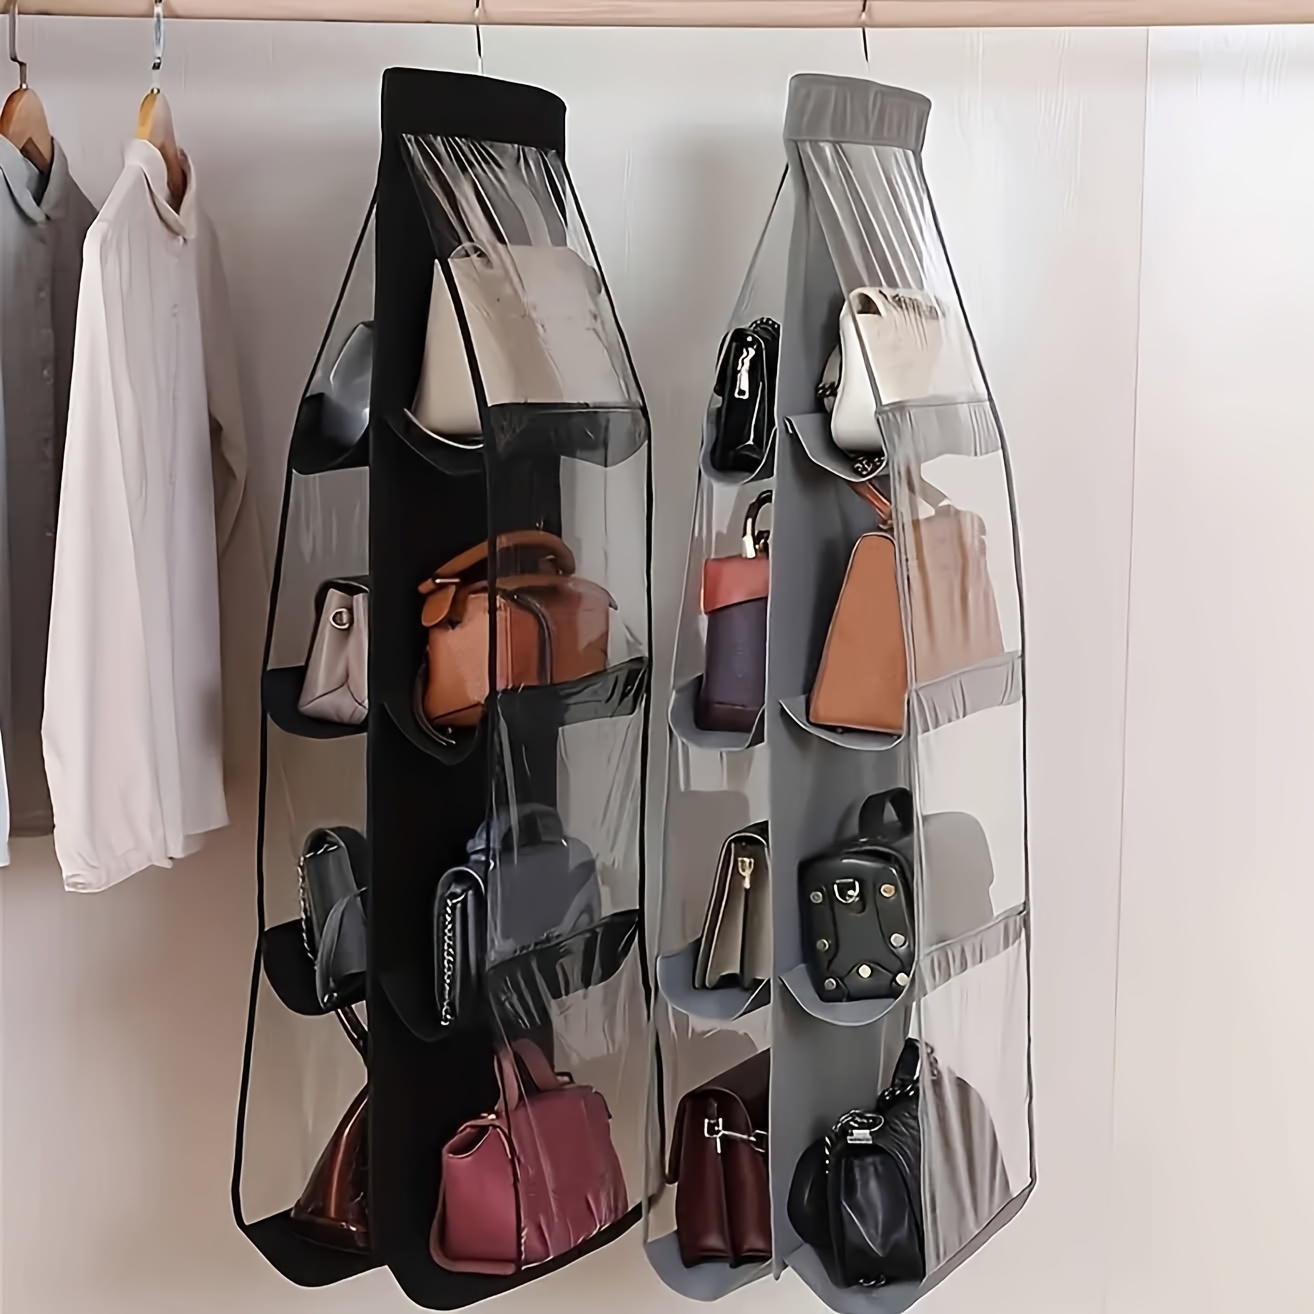 8 Pockets Hanging Bag Organizer, Closet Wardrobe Storage Bag, Household  Hanging Rack & Holder - Temu